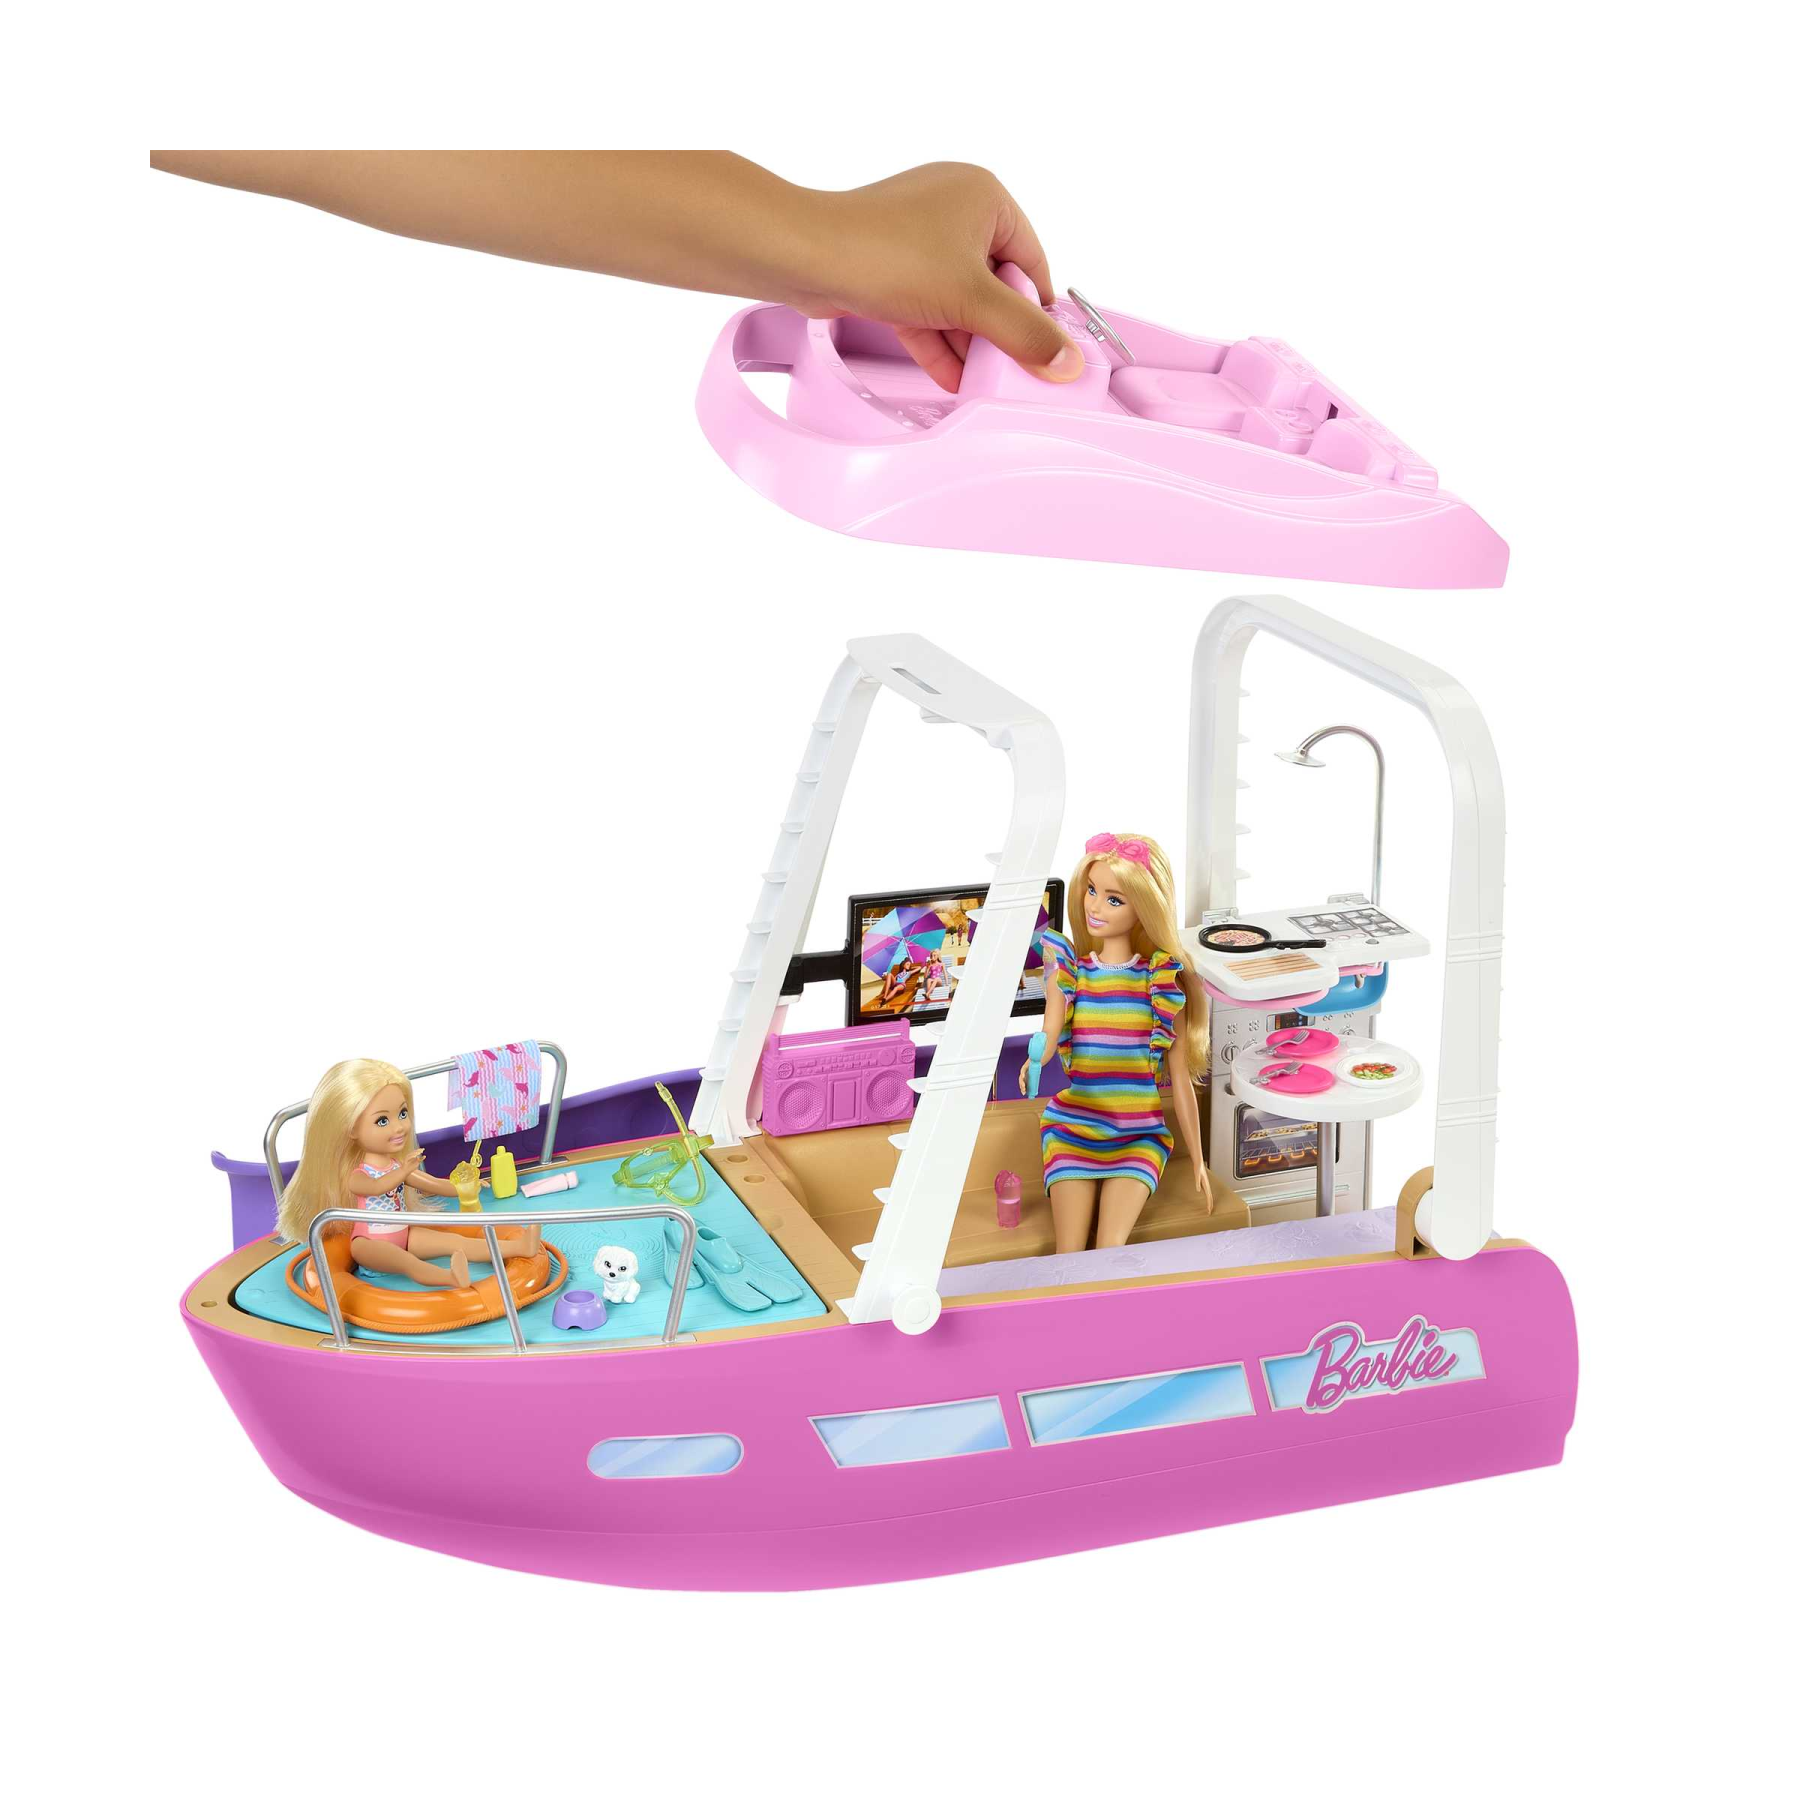 Barbie - barca dei sogni, playset con piscina, scivolo, un delfino e 20+ accessori, 3+ anni, hjv37 - Barbie